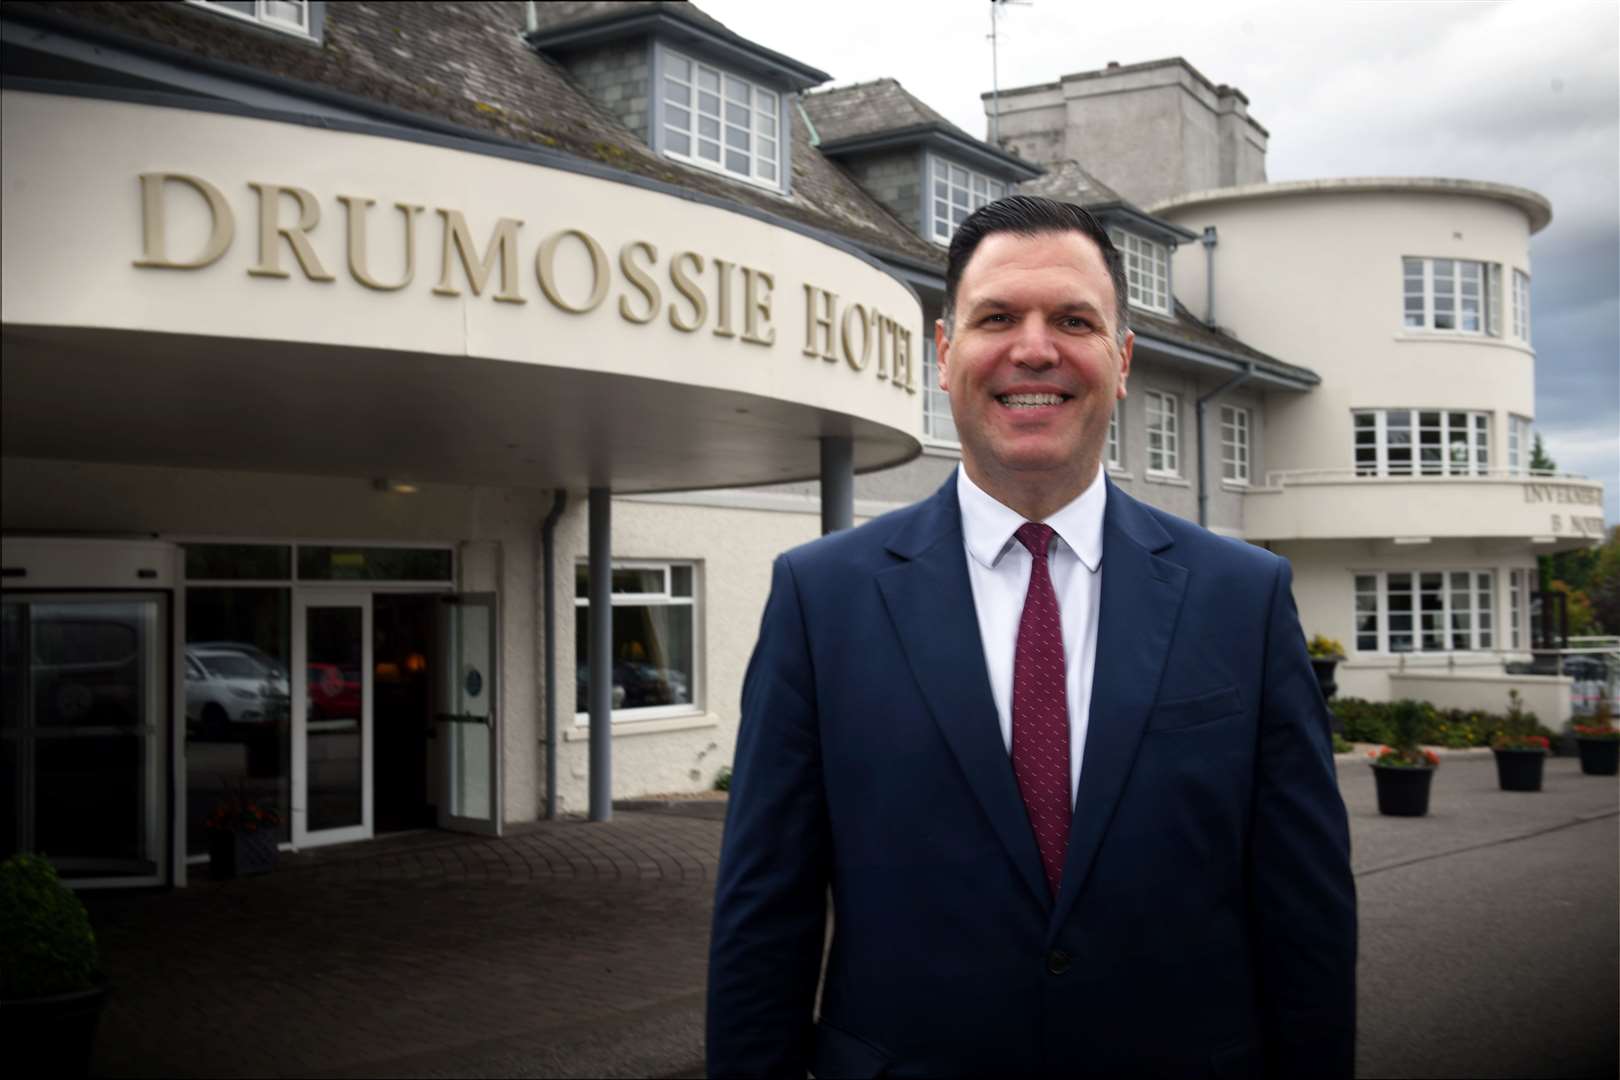 Stephane Portes, Drumossie Hotel General Manager. Picture: James Mackenzie.